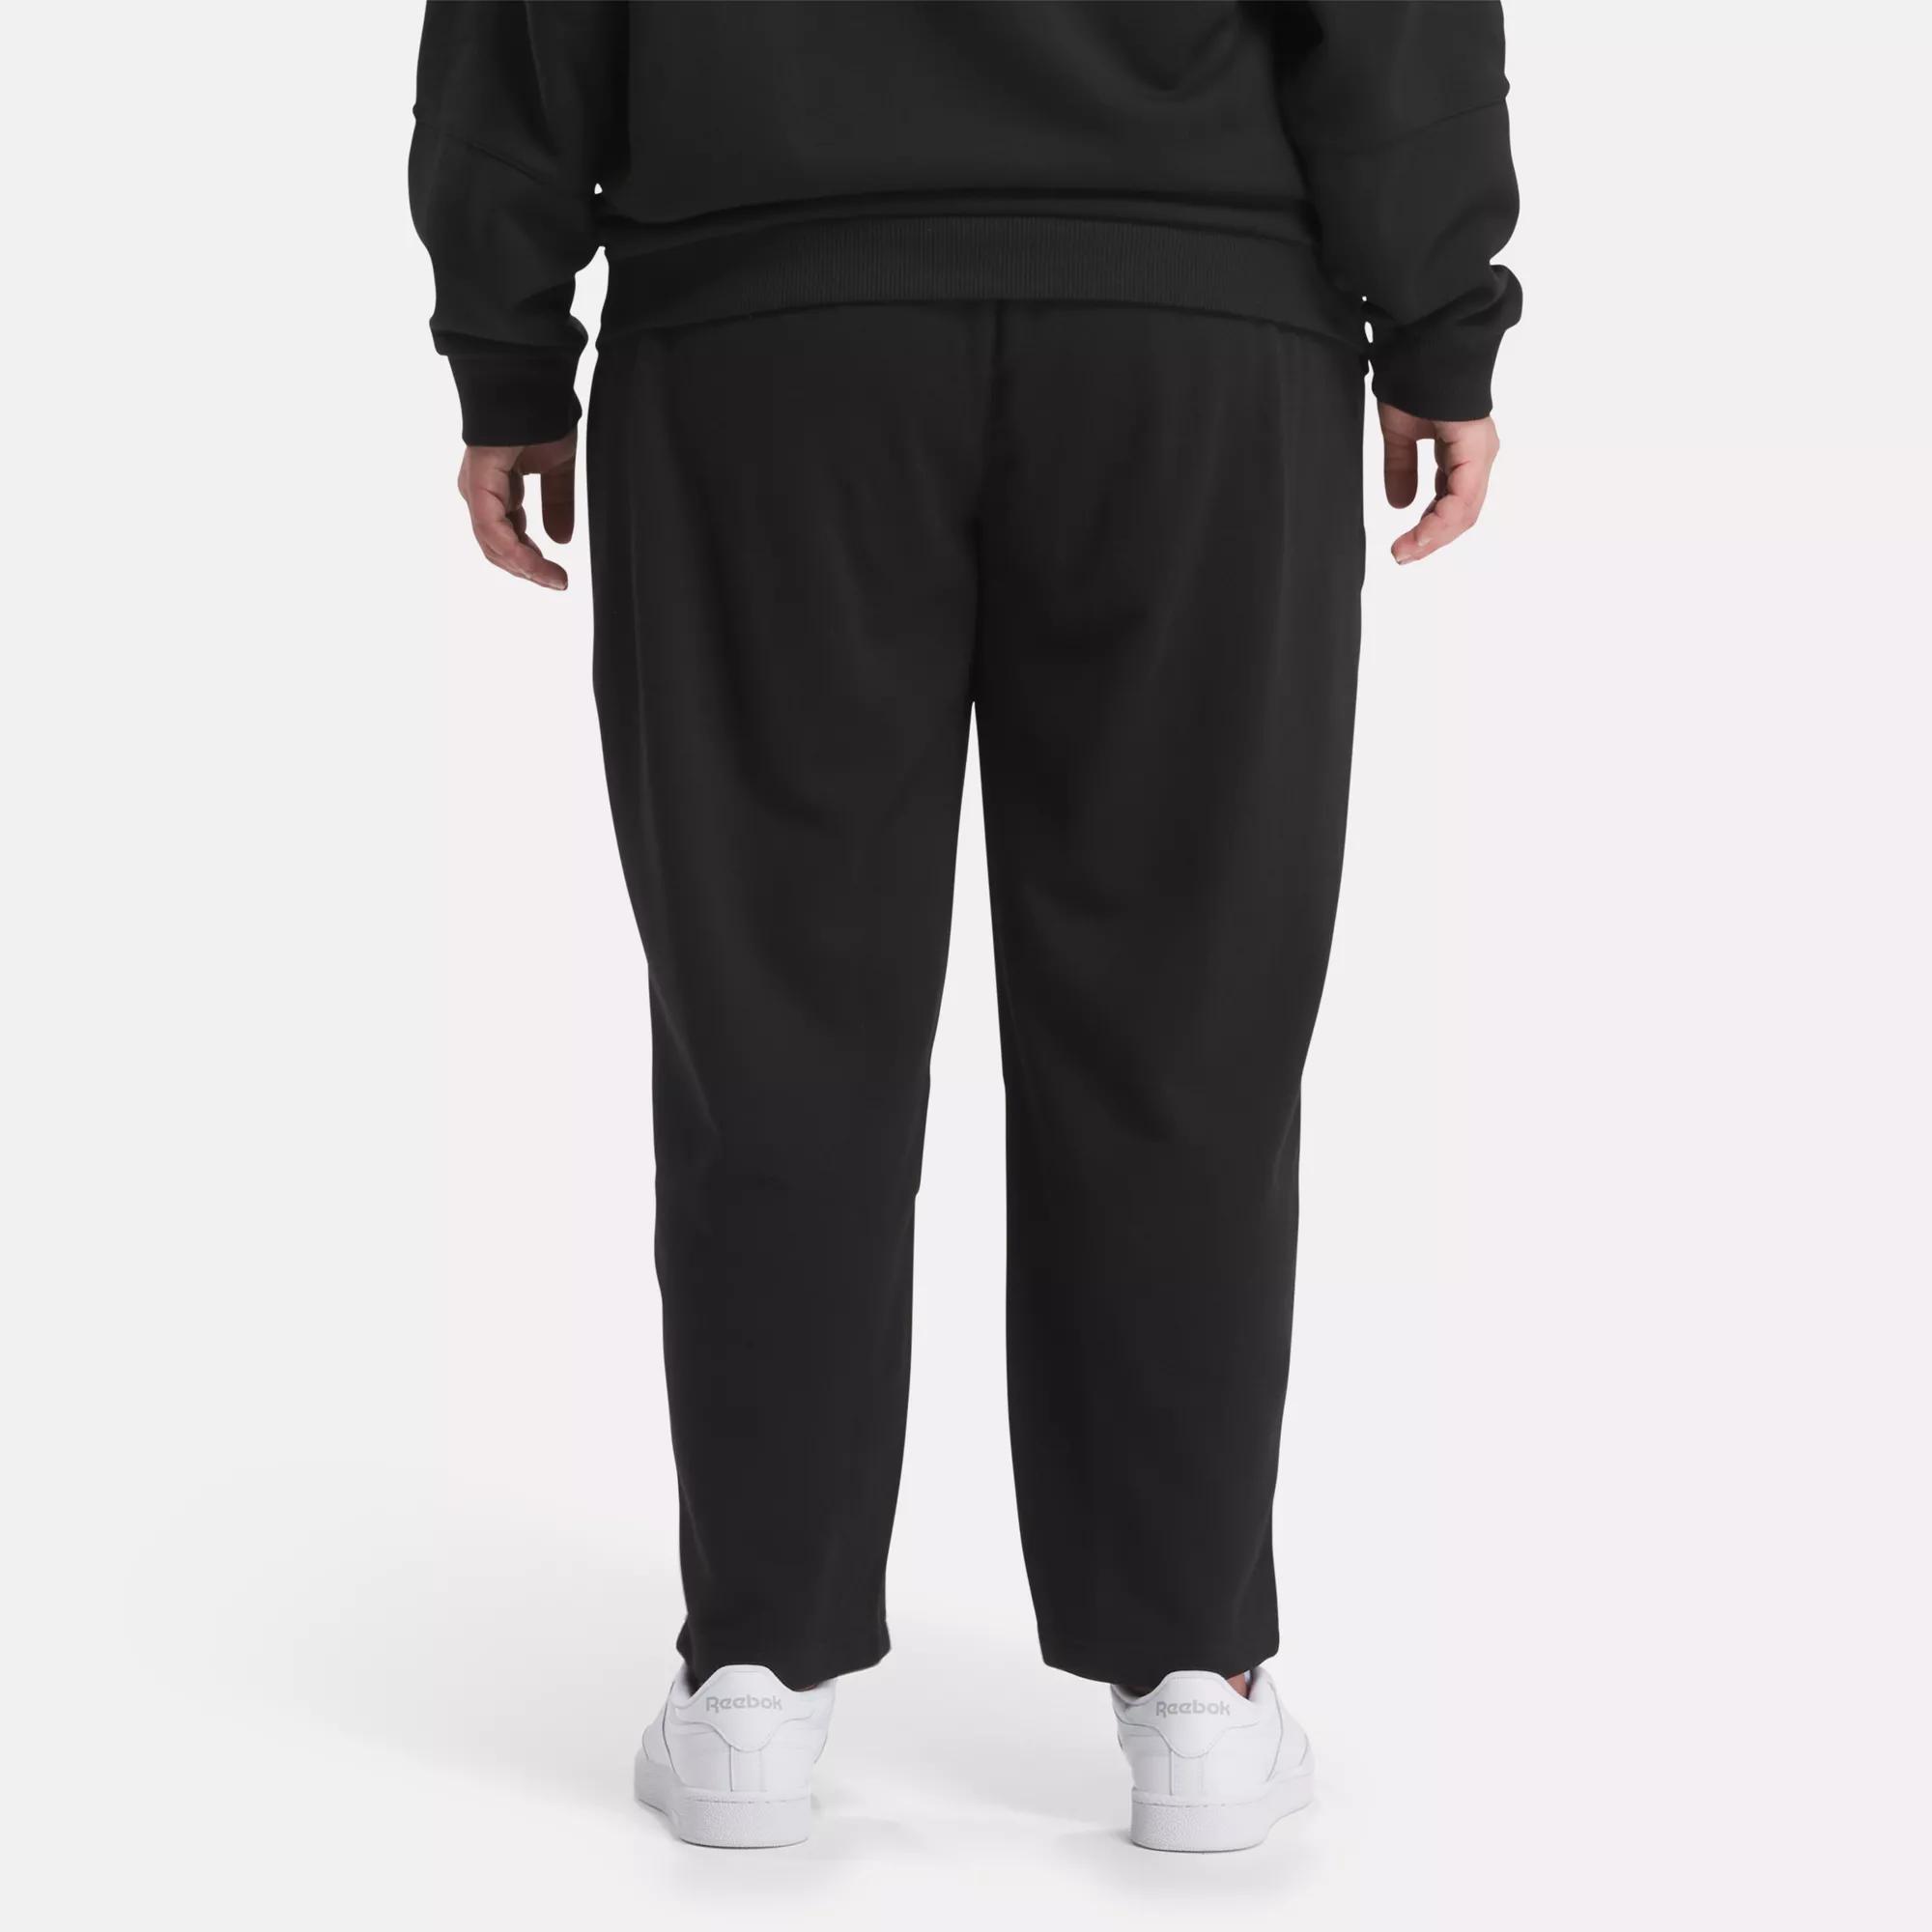 Lux Fleece Sweatpants (Plus Size) - Black | Reebok